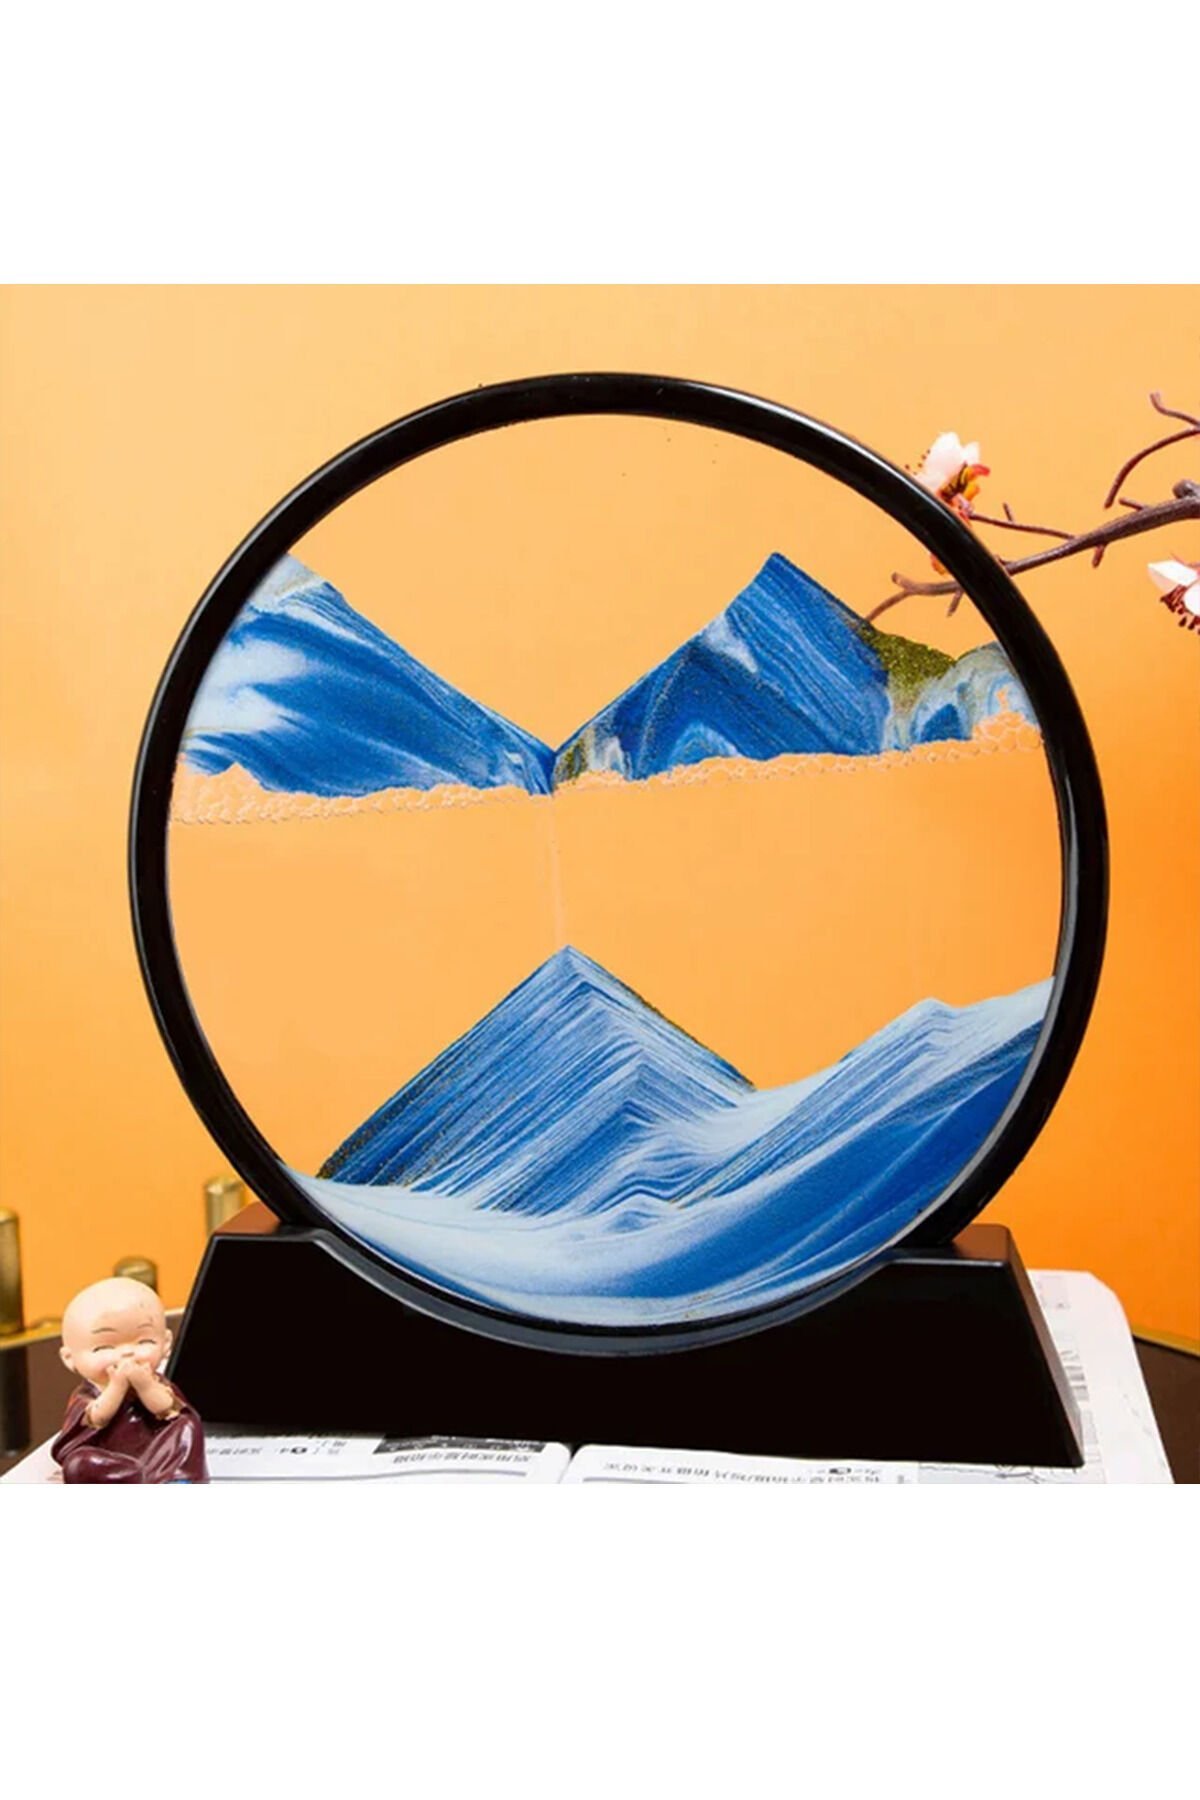 3D Dekoratif Yuvarlak Kum Saati 18cm - Mavi